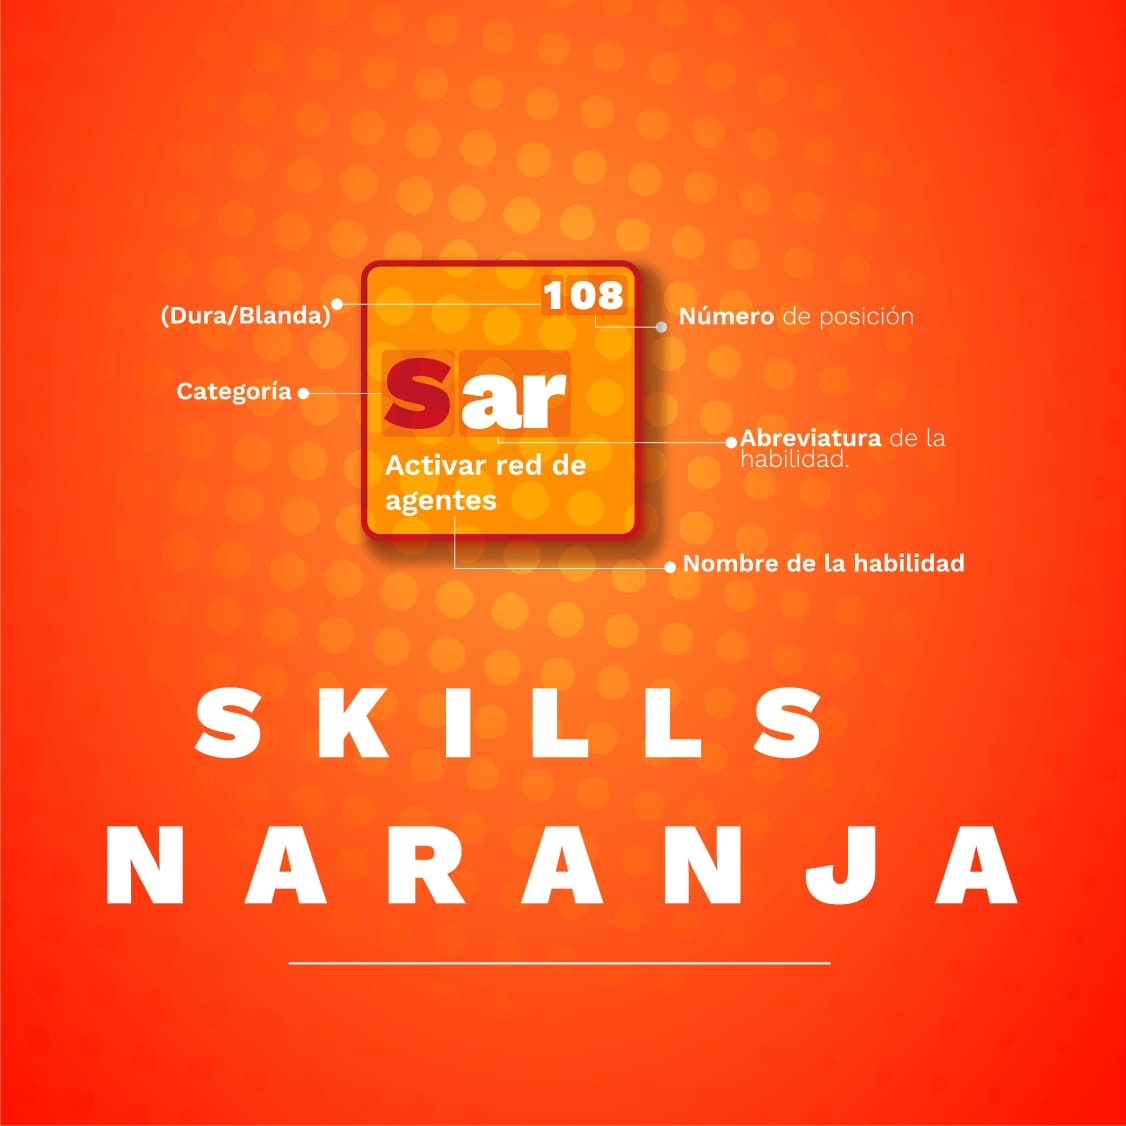 Se lanza plataforma para el desarrollo de habilidades naranja 